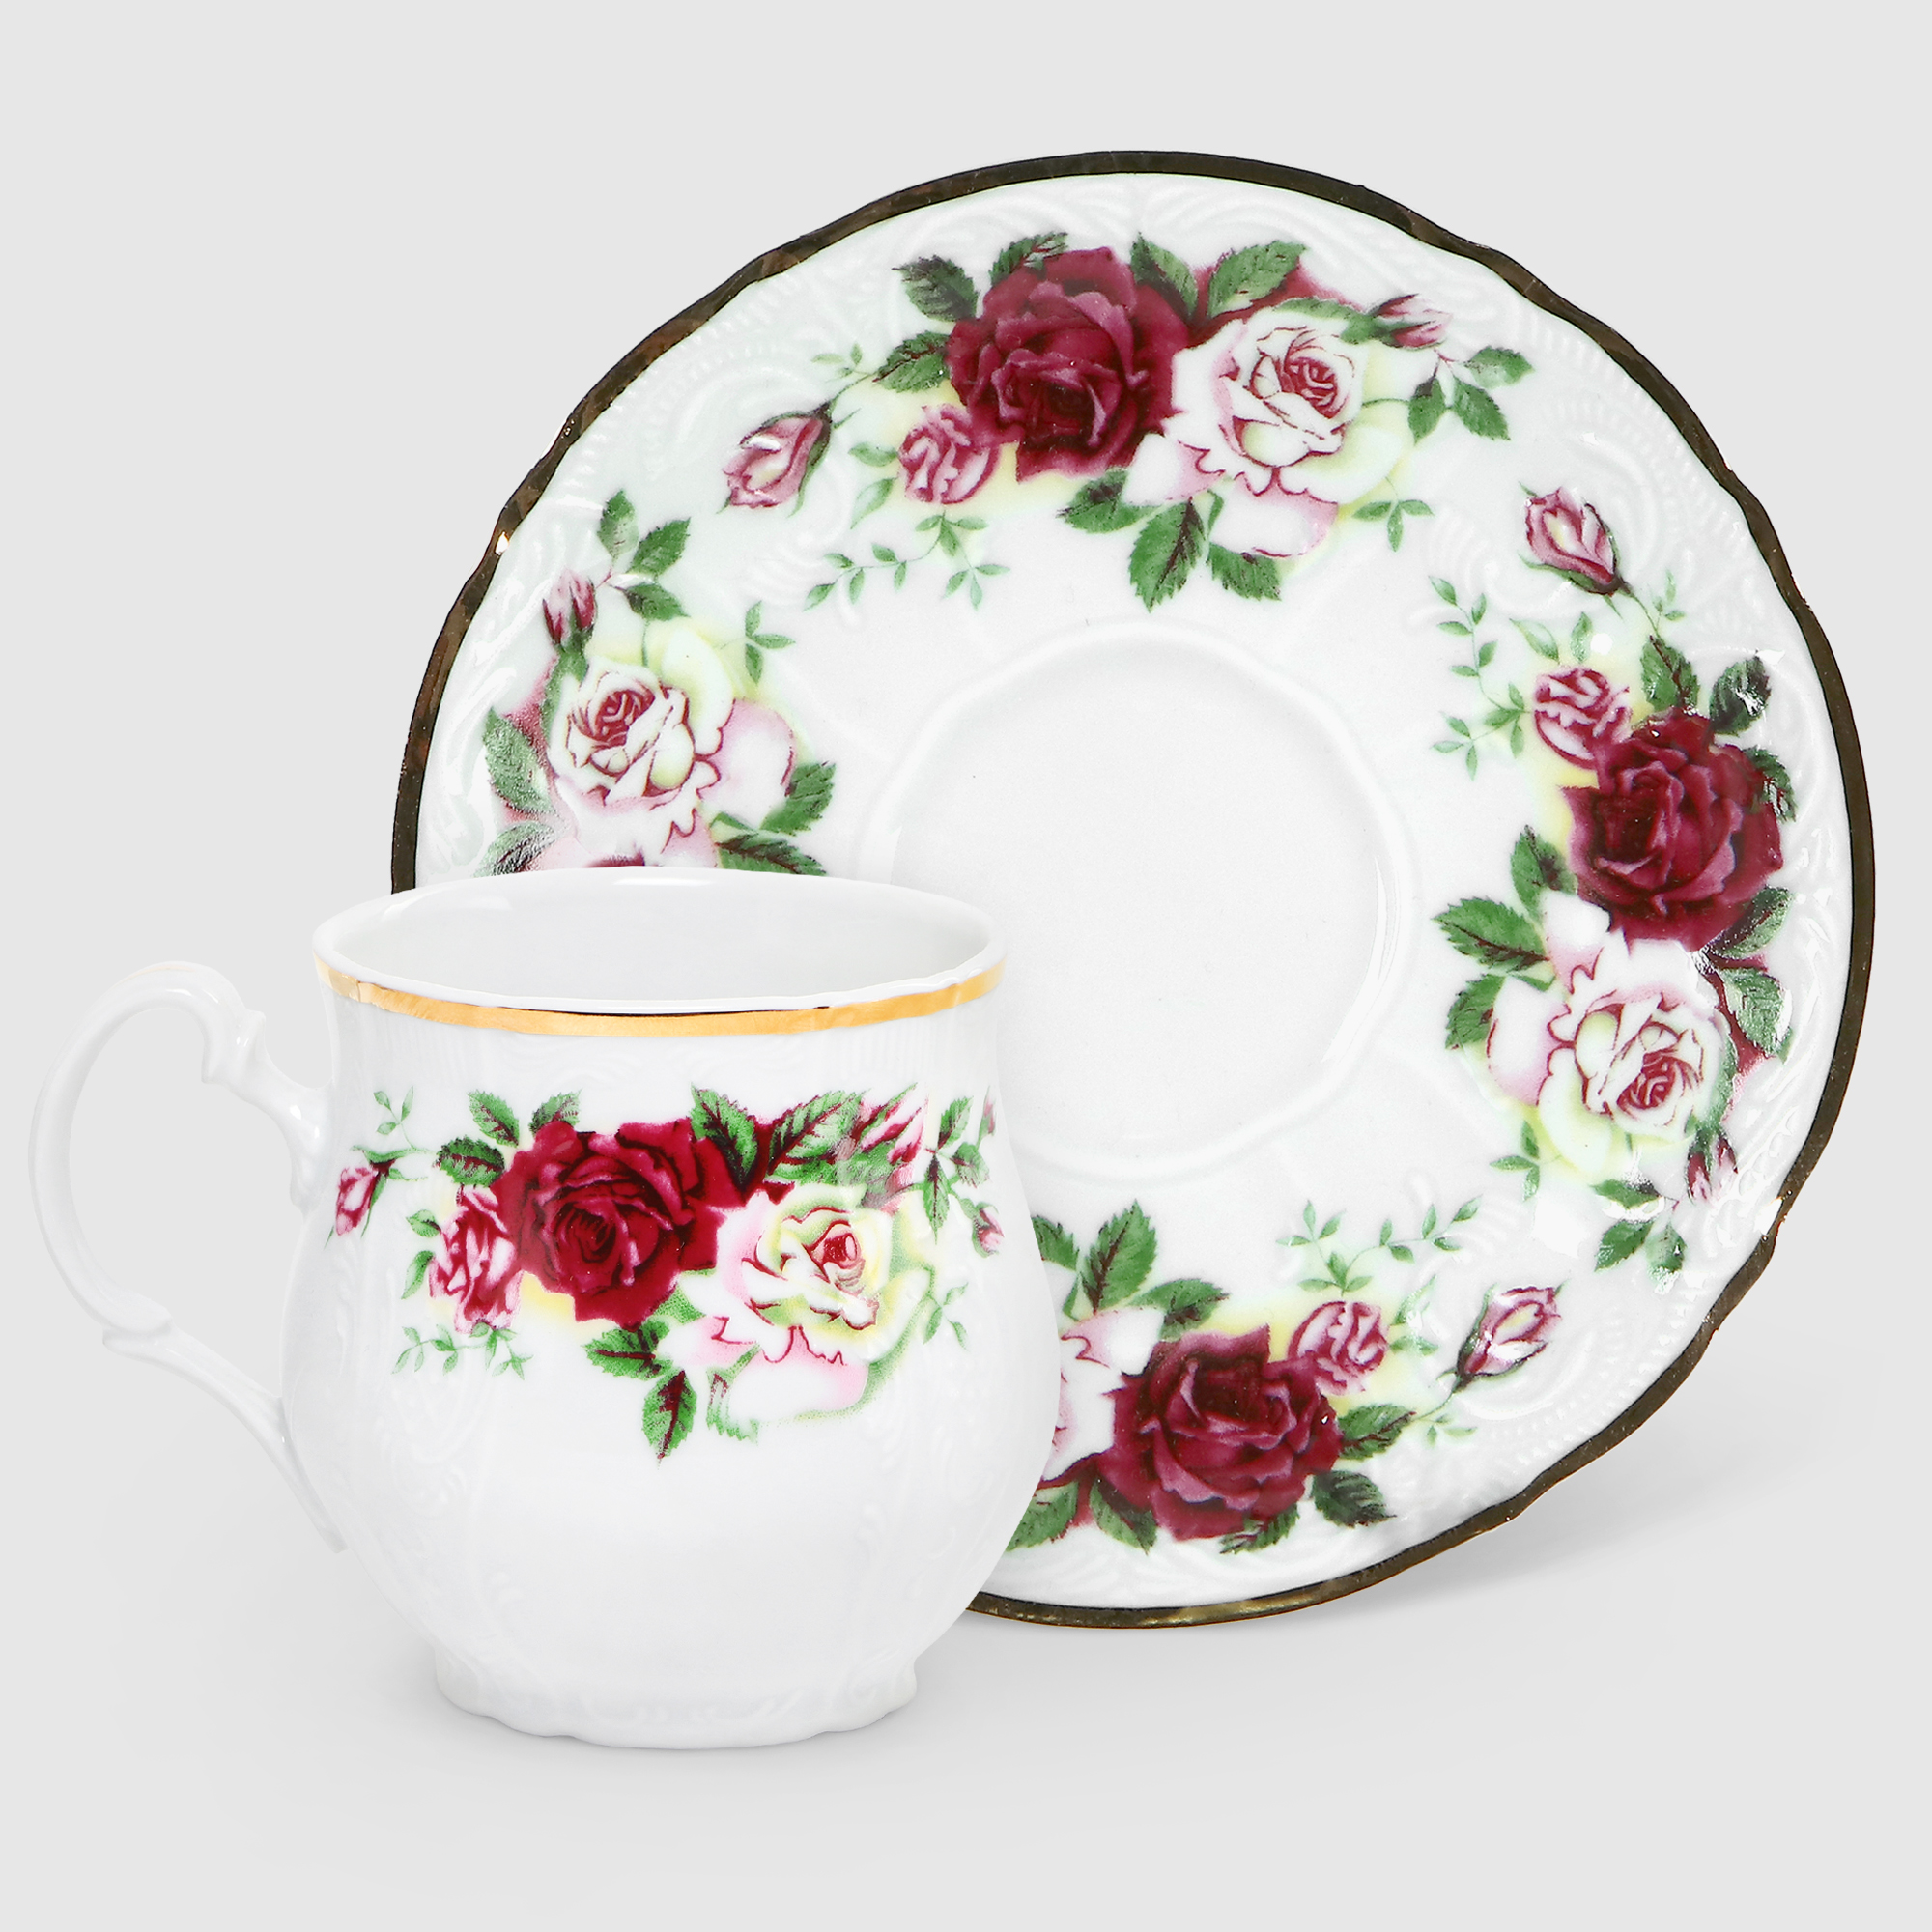 Чашка для чая с блюдцем Bernadotte Английская роза 310 мл 160 мм чашка с блюдцем bernadotte отводка золото 240 мл